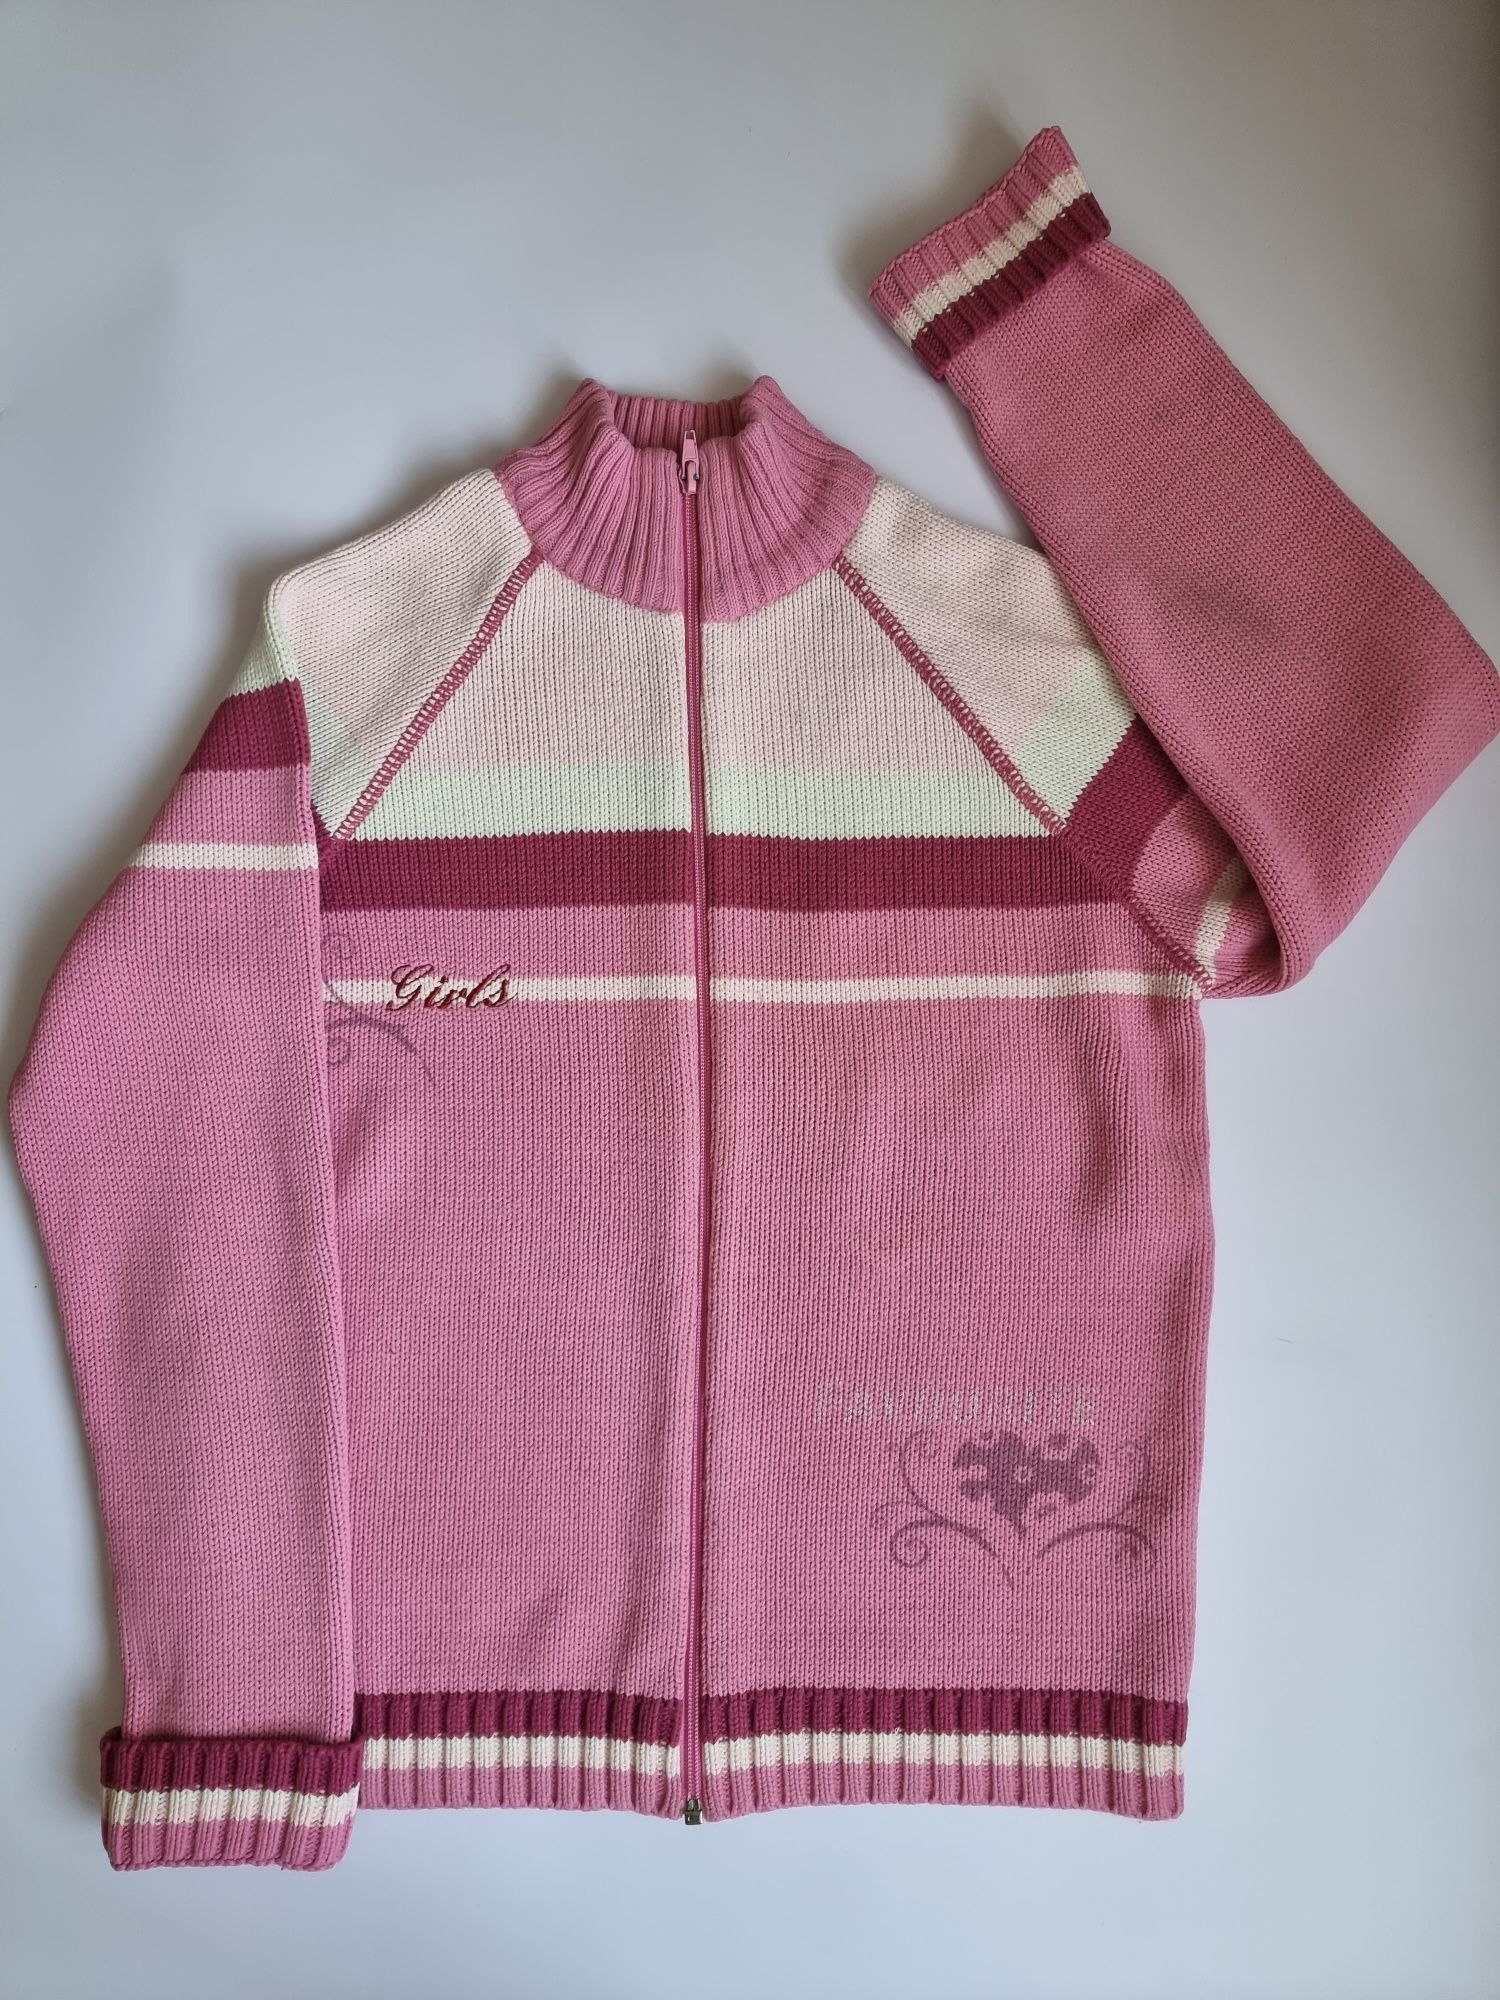 Sweter różowy na zamek dla dziewczynki rozmiar 152  Swetr